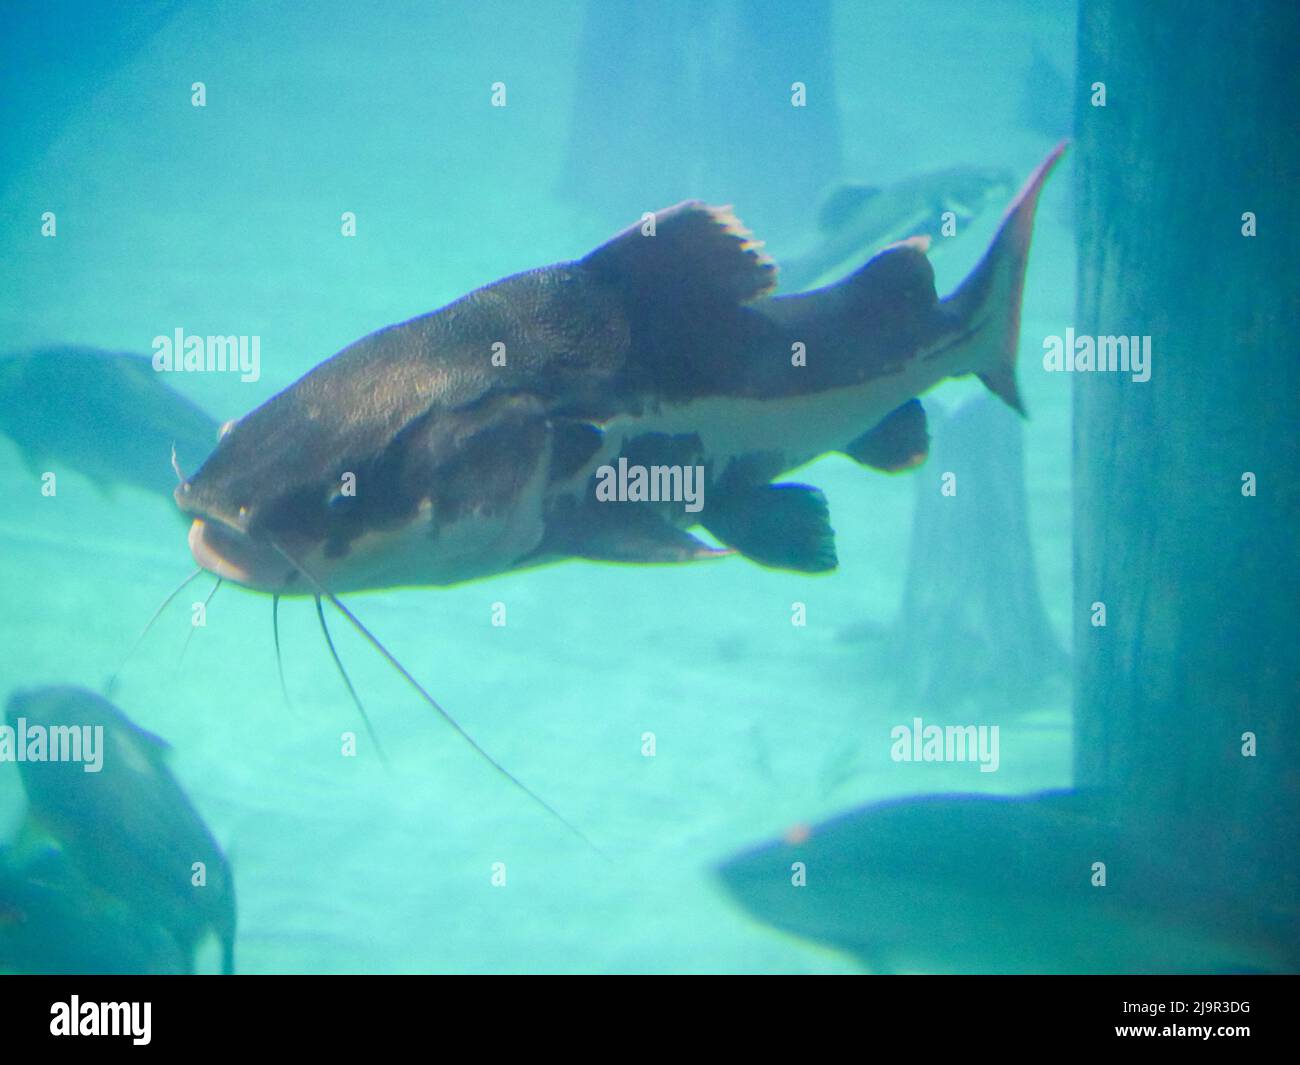 Big Catfish swimming in fish tank Aquarium Stock Photo